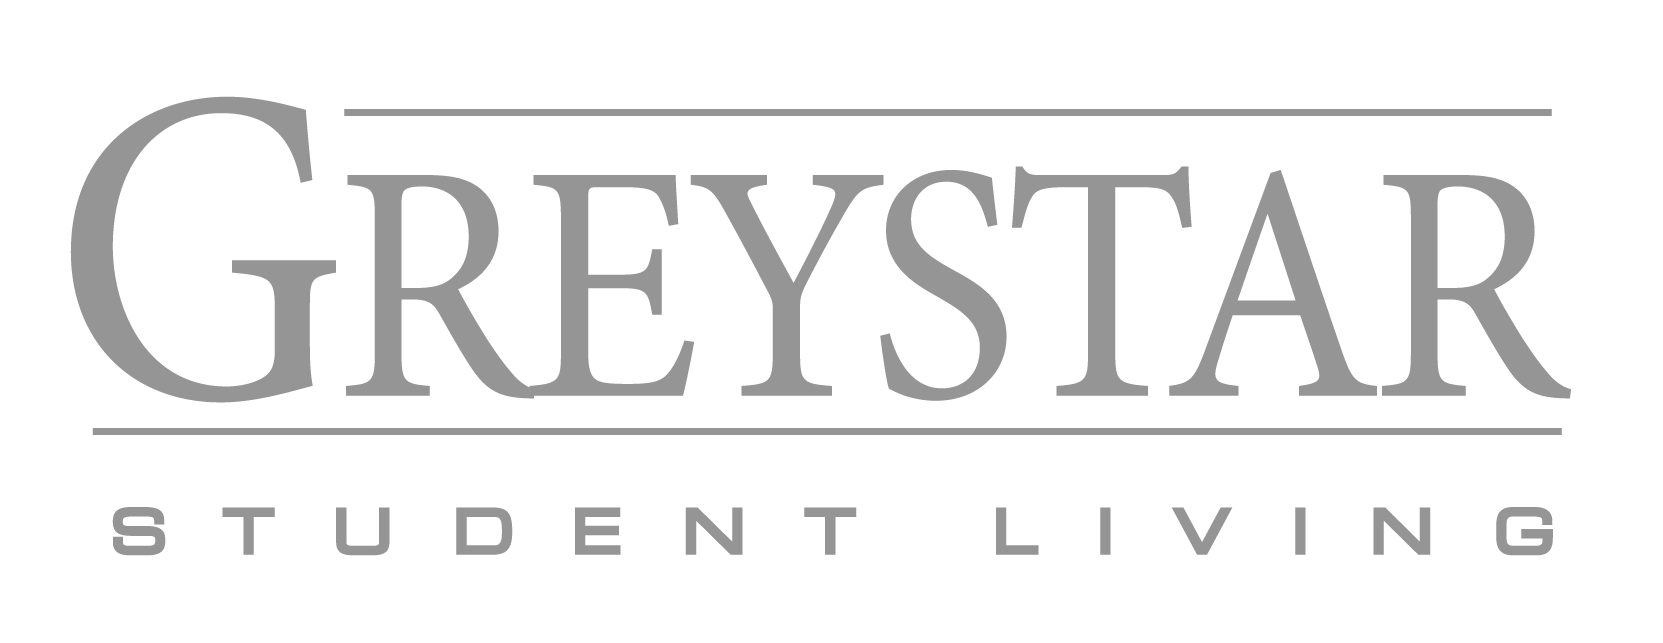 greystar student living logo